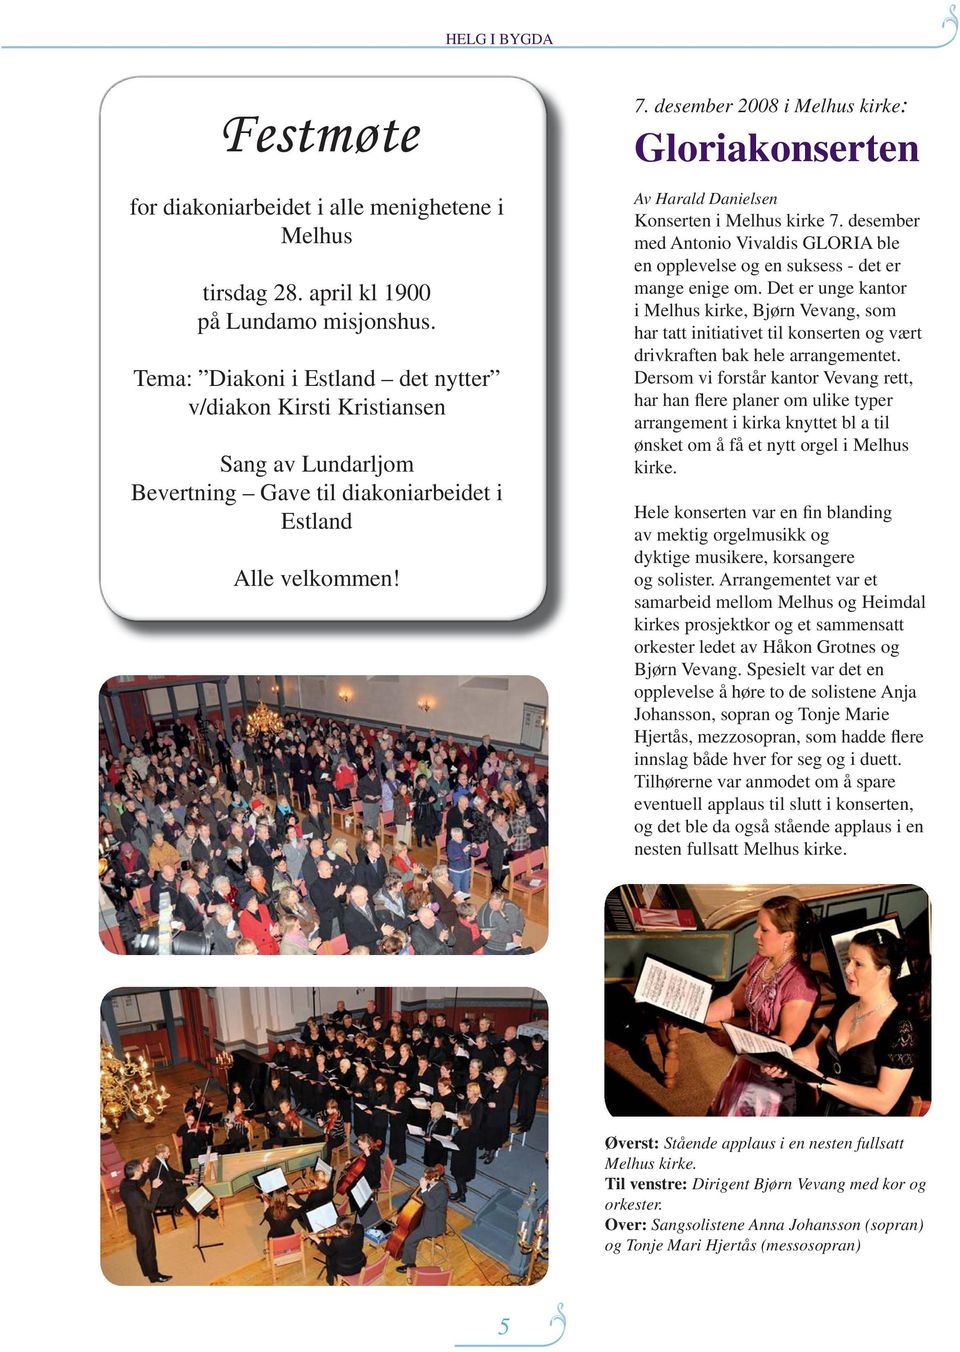 desember 2008 i Melhus kirke: Gloriakonserten Av Harald Danielsen Konserten i Melhus kirke 7. desember med Antonio Vivaldis GLORIA ble en opplevelse og en suksess - det er mange enige om.